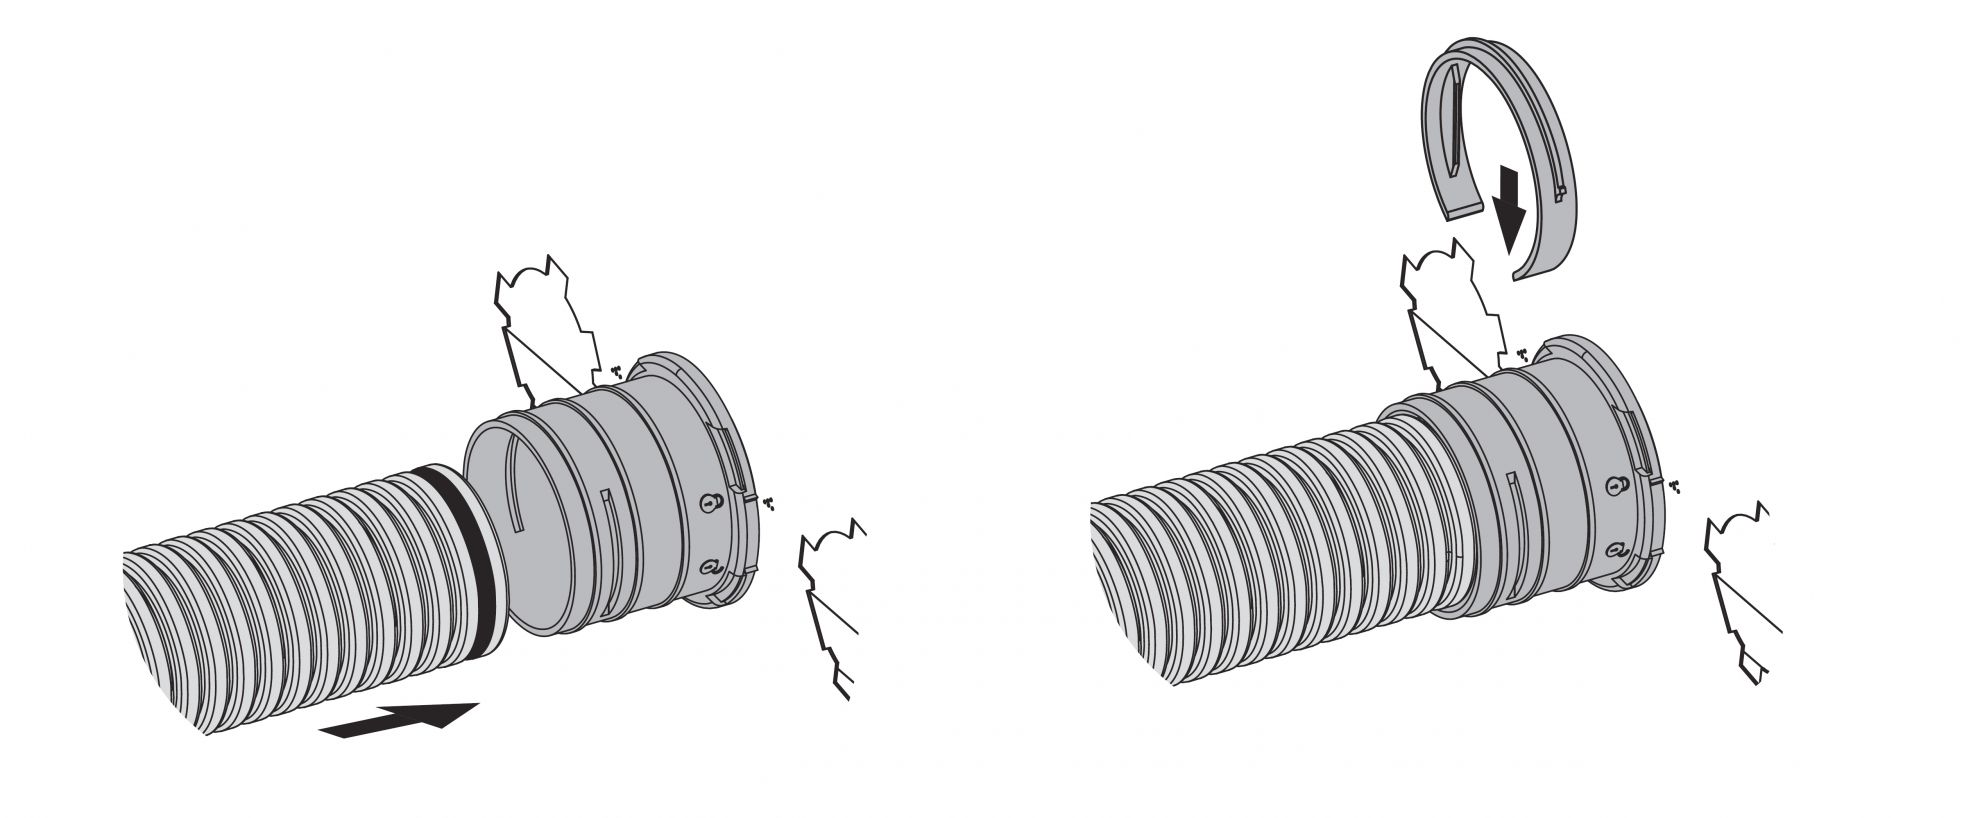 Skrzynka rozprężna służy do połączenia klasycznego kanału wentylacyjnego o średnicy 125 mm z kanałowym systemem wentylacyjnym Flexitech Ø 63 mm